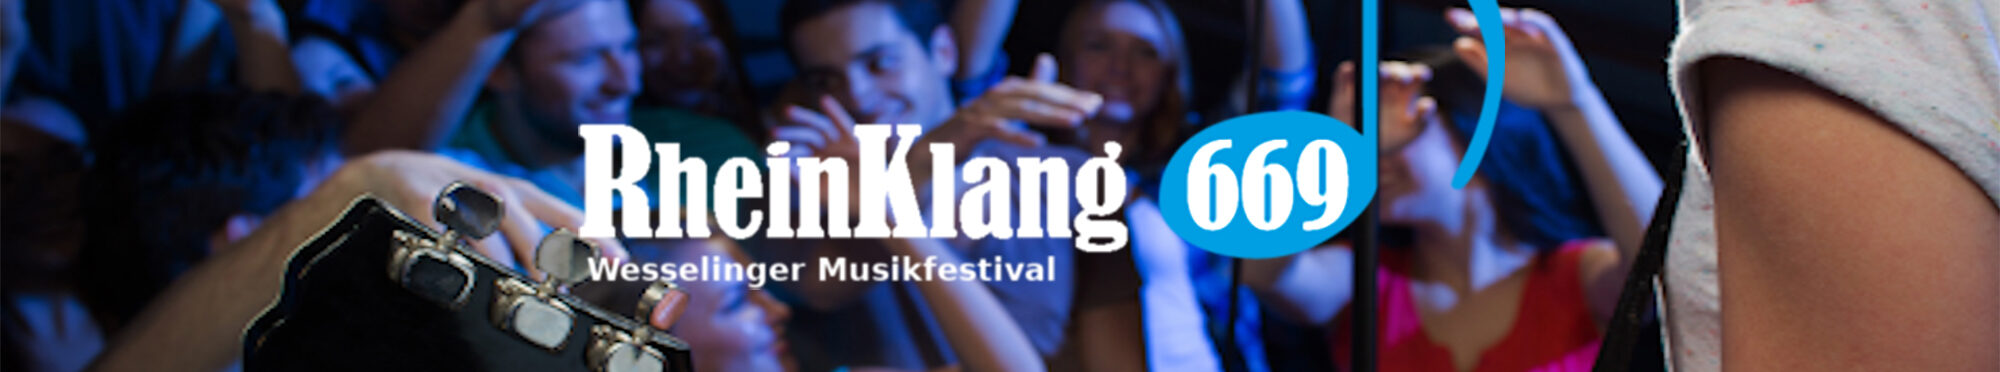 RheinKlang 669 Musikfestival